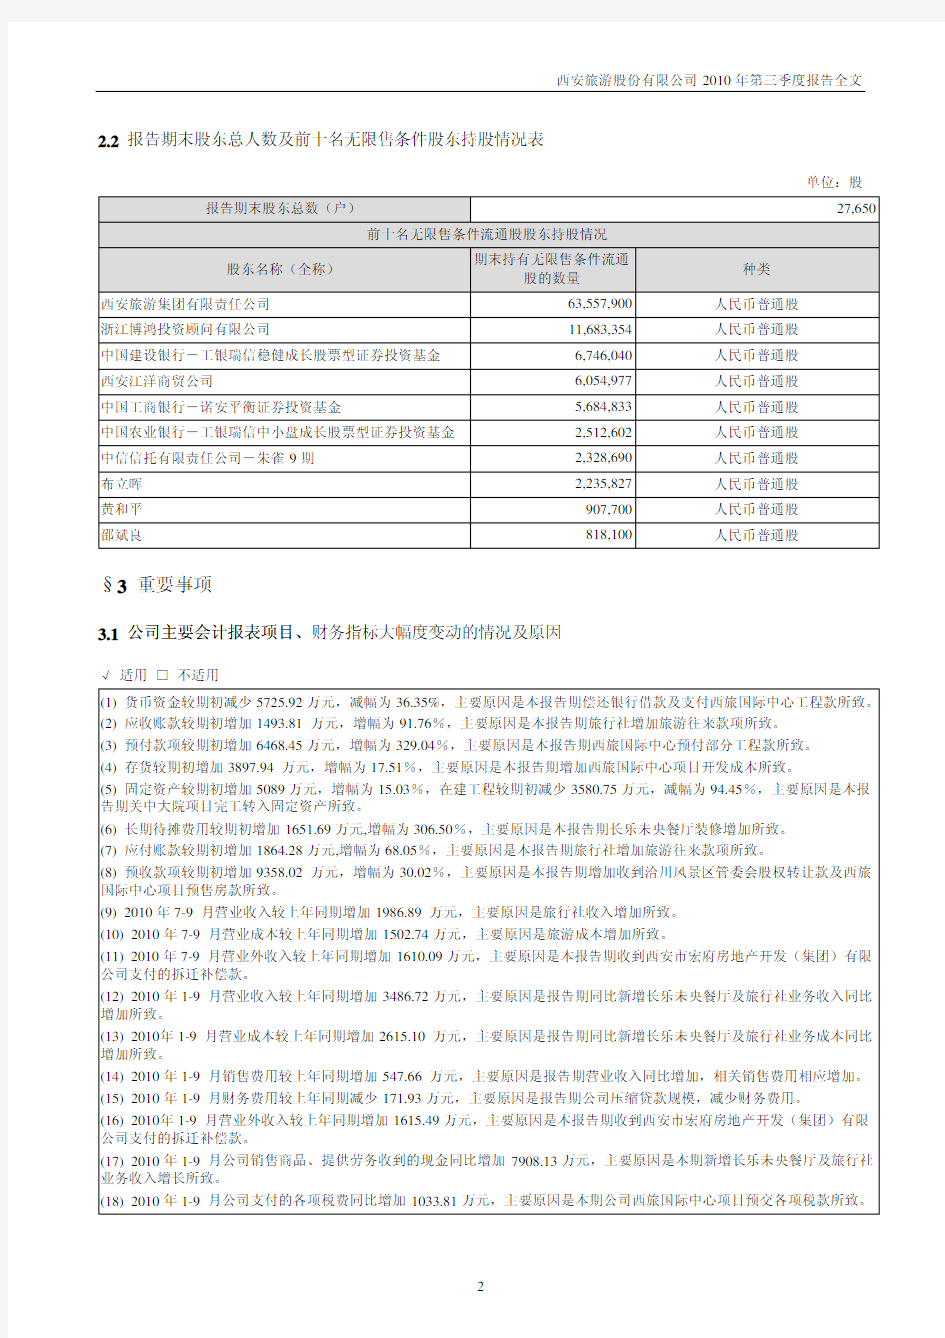 西安旅游：XXXX年第三季度报告全文.pdf